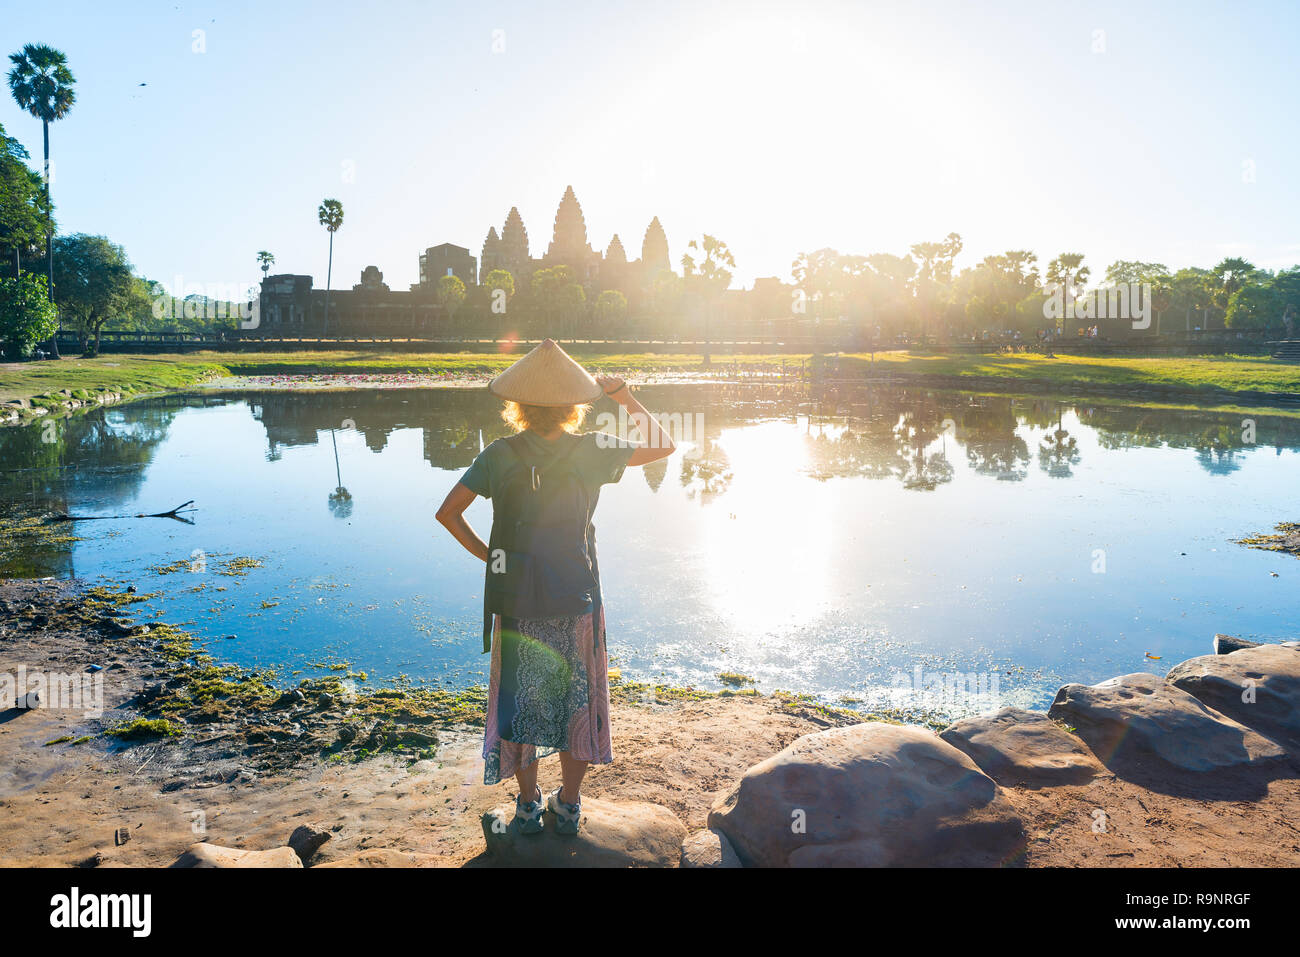 Eine touristische besuchen die Ruinen von Angkor Wat bei Sonnenaufgang, Reiseziel Kambodscha. Reflexion über Wasser Teich und sunburst, Frau mit traditionellen Hut und r Stockfoto